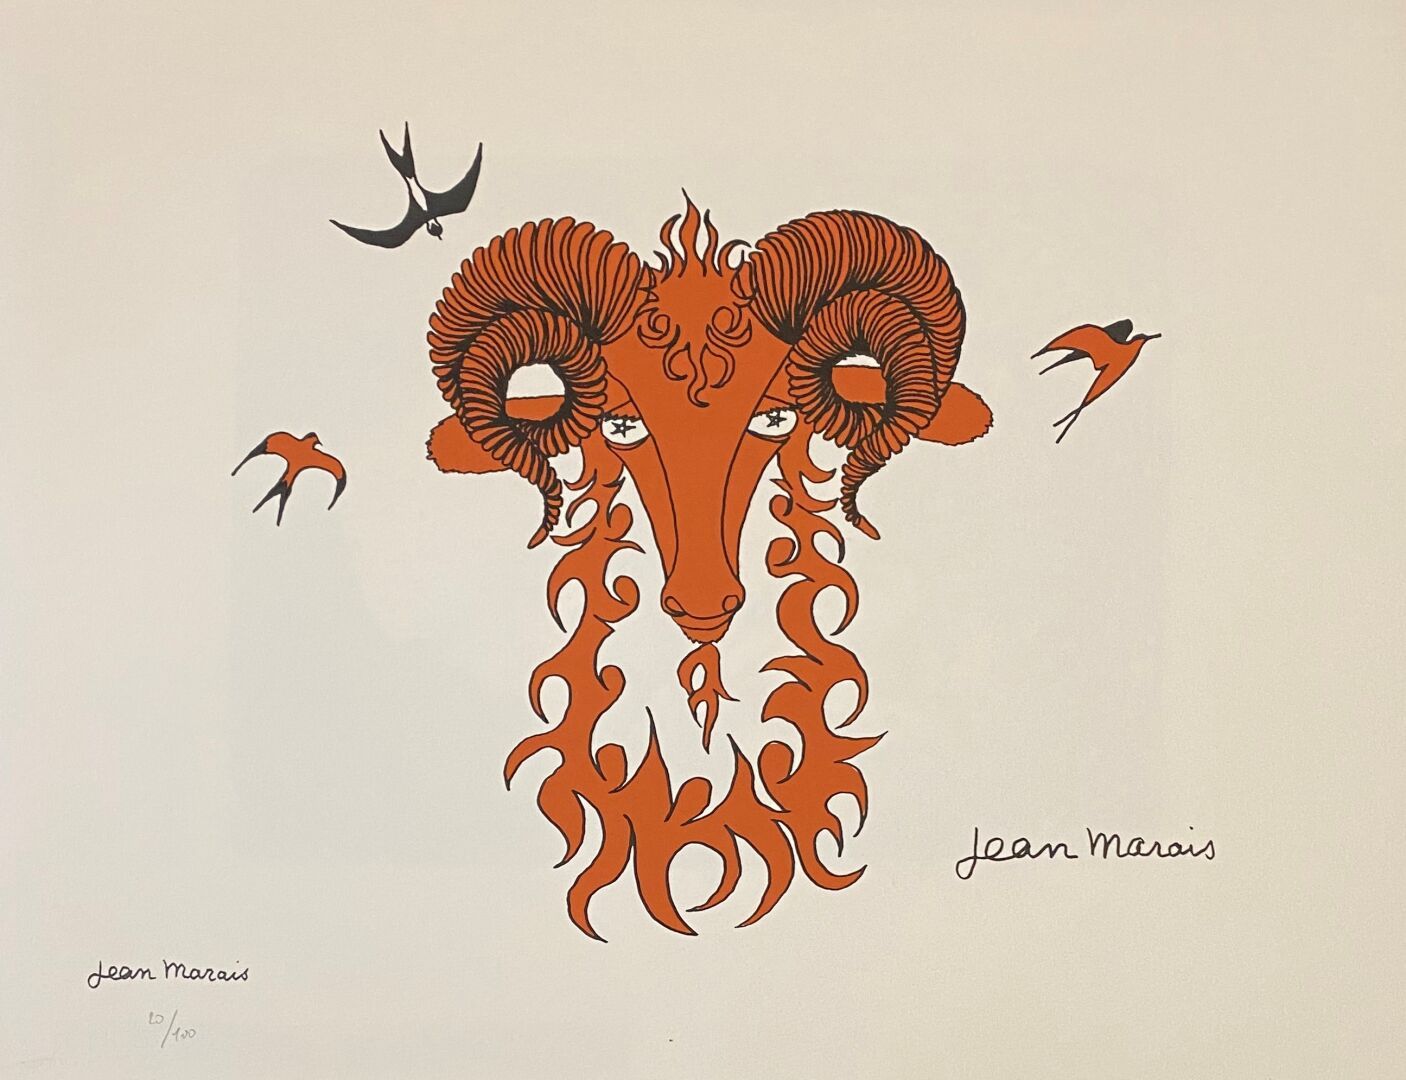 Jean MARAIS (1913-1998) 
十二星座, 白羊座




彩色平版画




板块内有签名，并盖有艺术家的签名




编号为100的


&hellip;